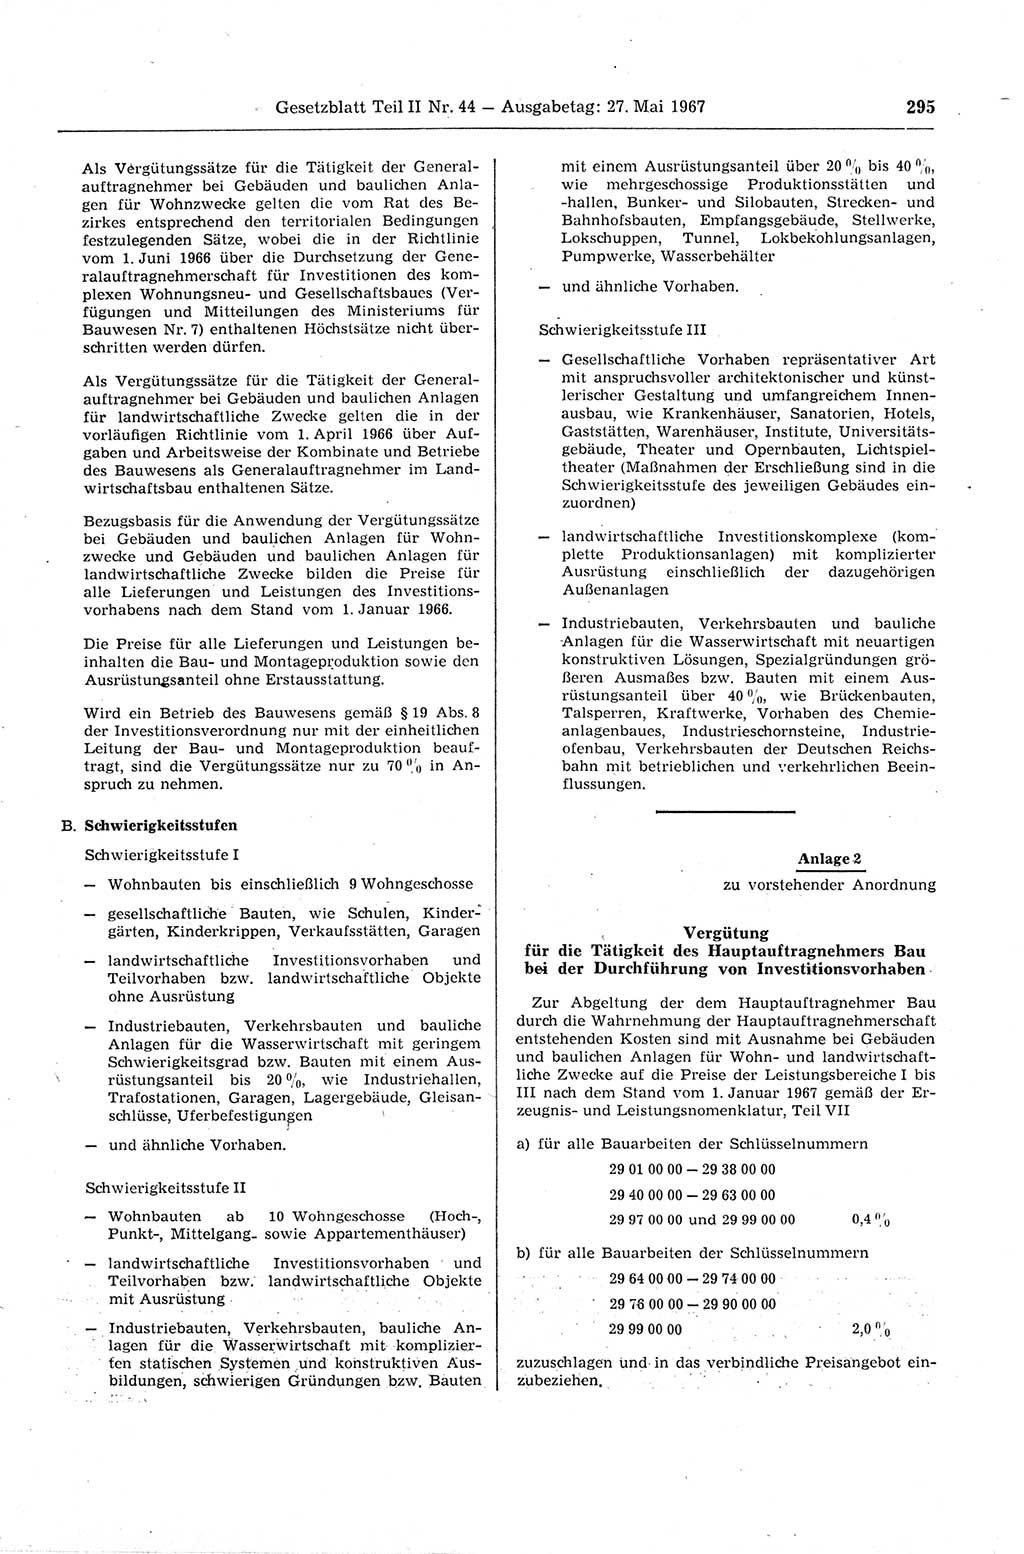 Gesetzblatt (GBl.) der Deutschen Demokratischen Republik (DDR) Teil ⅠⅠ 1967, Seite 295 (GBl. DDR ⅠⅠ 1967, S. 295)